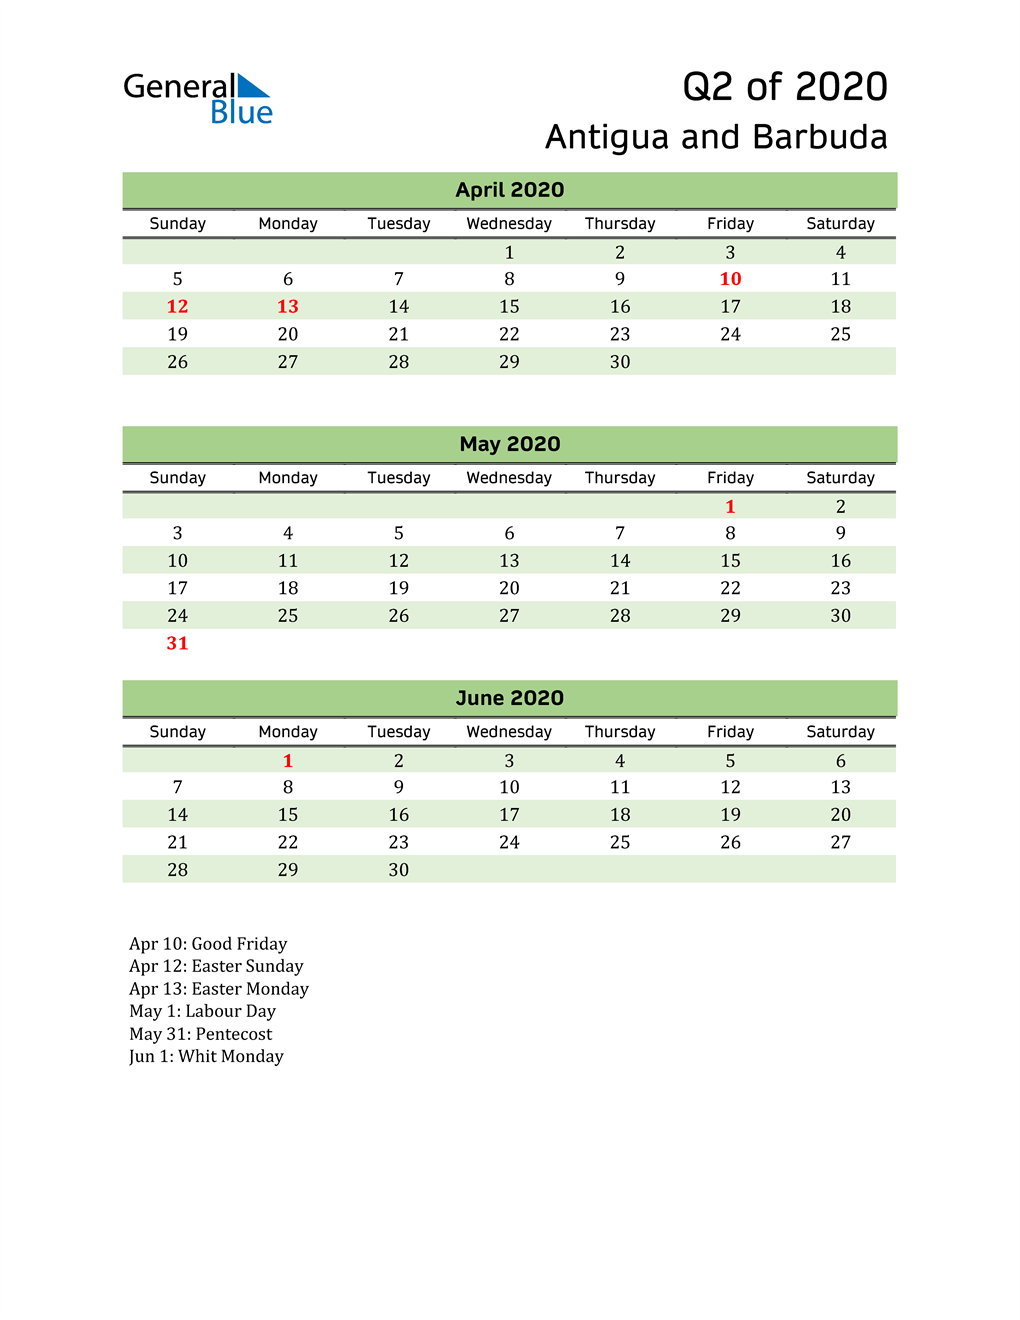  Quarterly Calendar 2020 with Antigua and Barbuda Holidays 